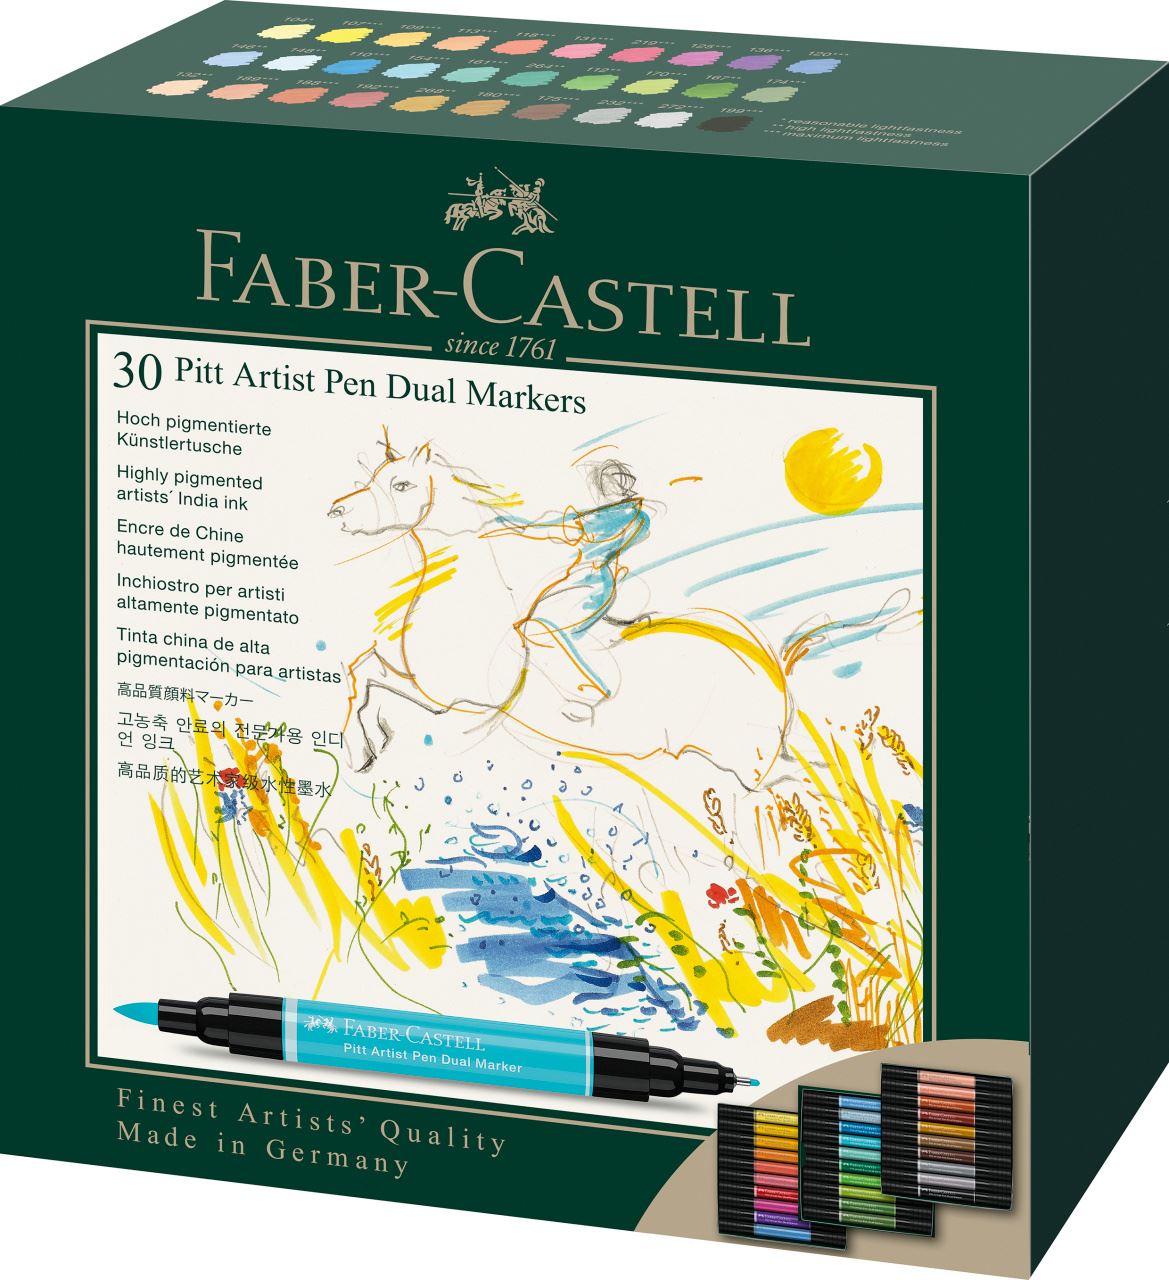 Faber-Castell - Pitt Artist Pen Dual Marker, Estuche de cartón c/30